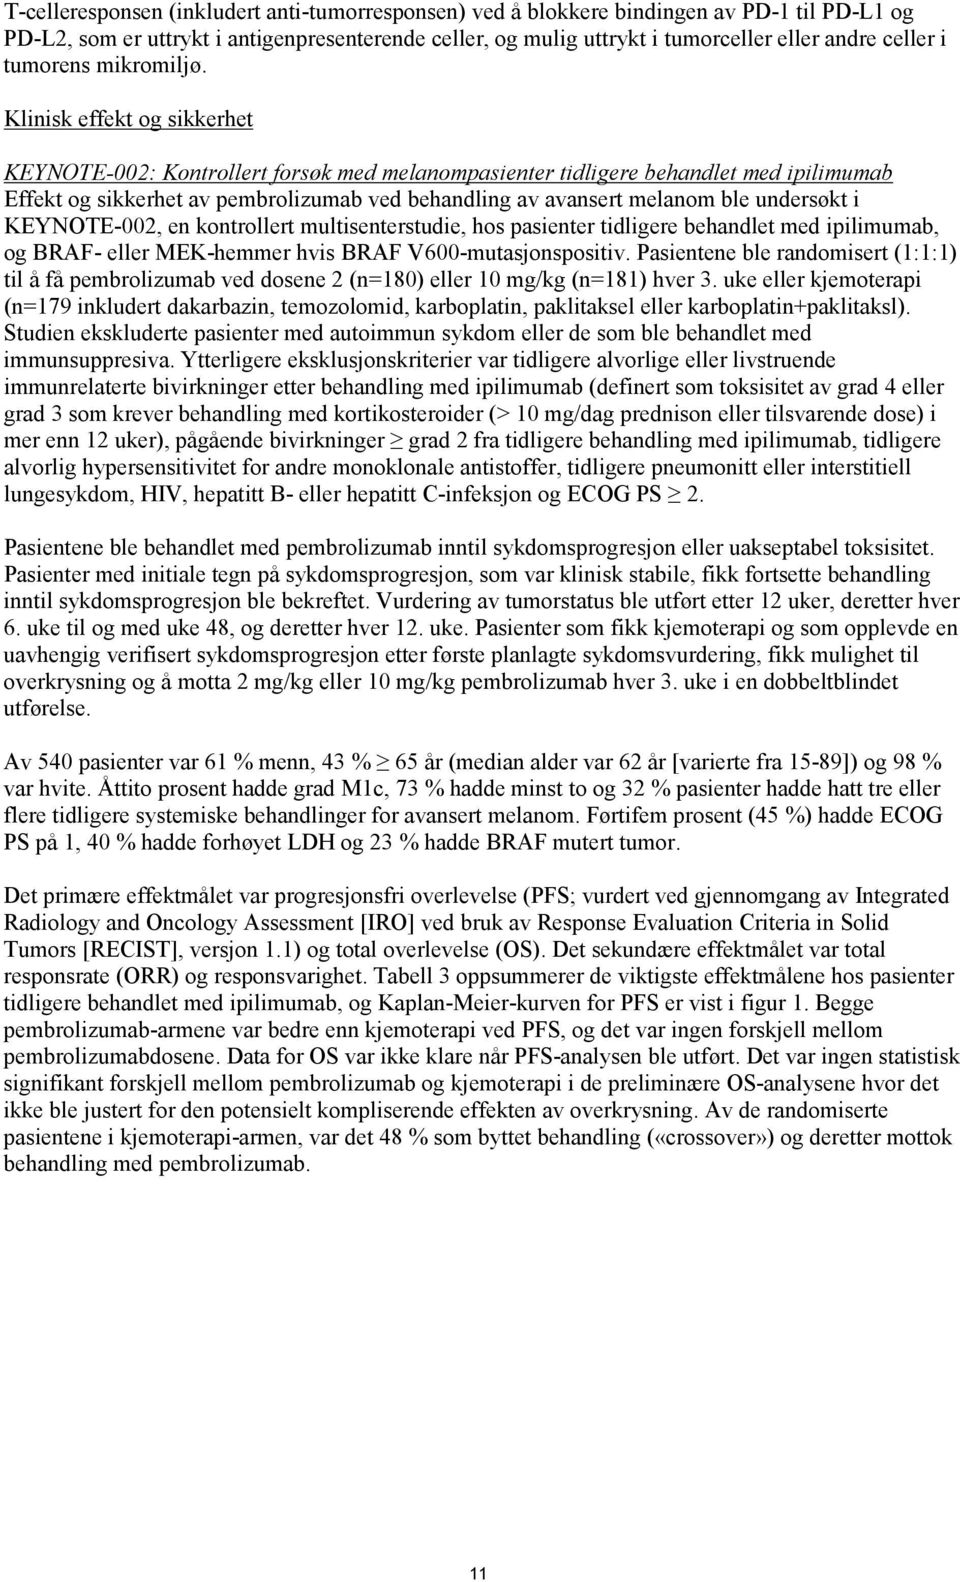 Klinisk effekt og sikkerhet KEYNOTE-002: Kontrollert forsøk med melanompasienter tidligere behandlet med ipilimumab Effekt og sikkerhet av pembrolizumab ved behandling av avansert melanom ble